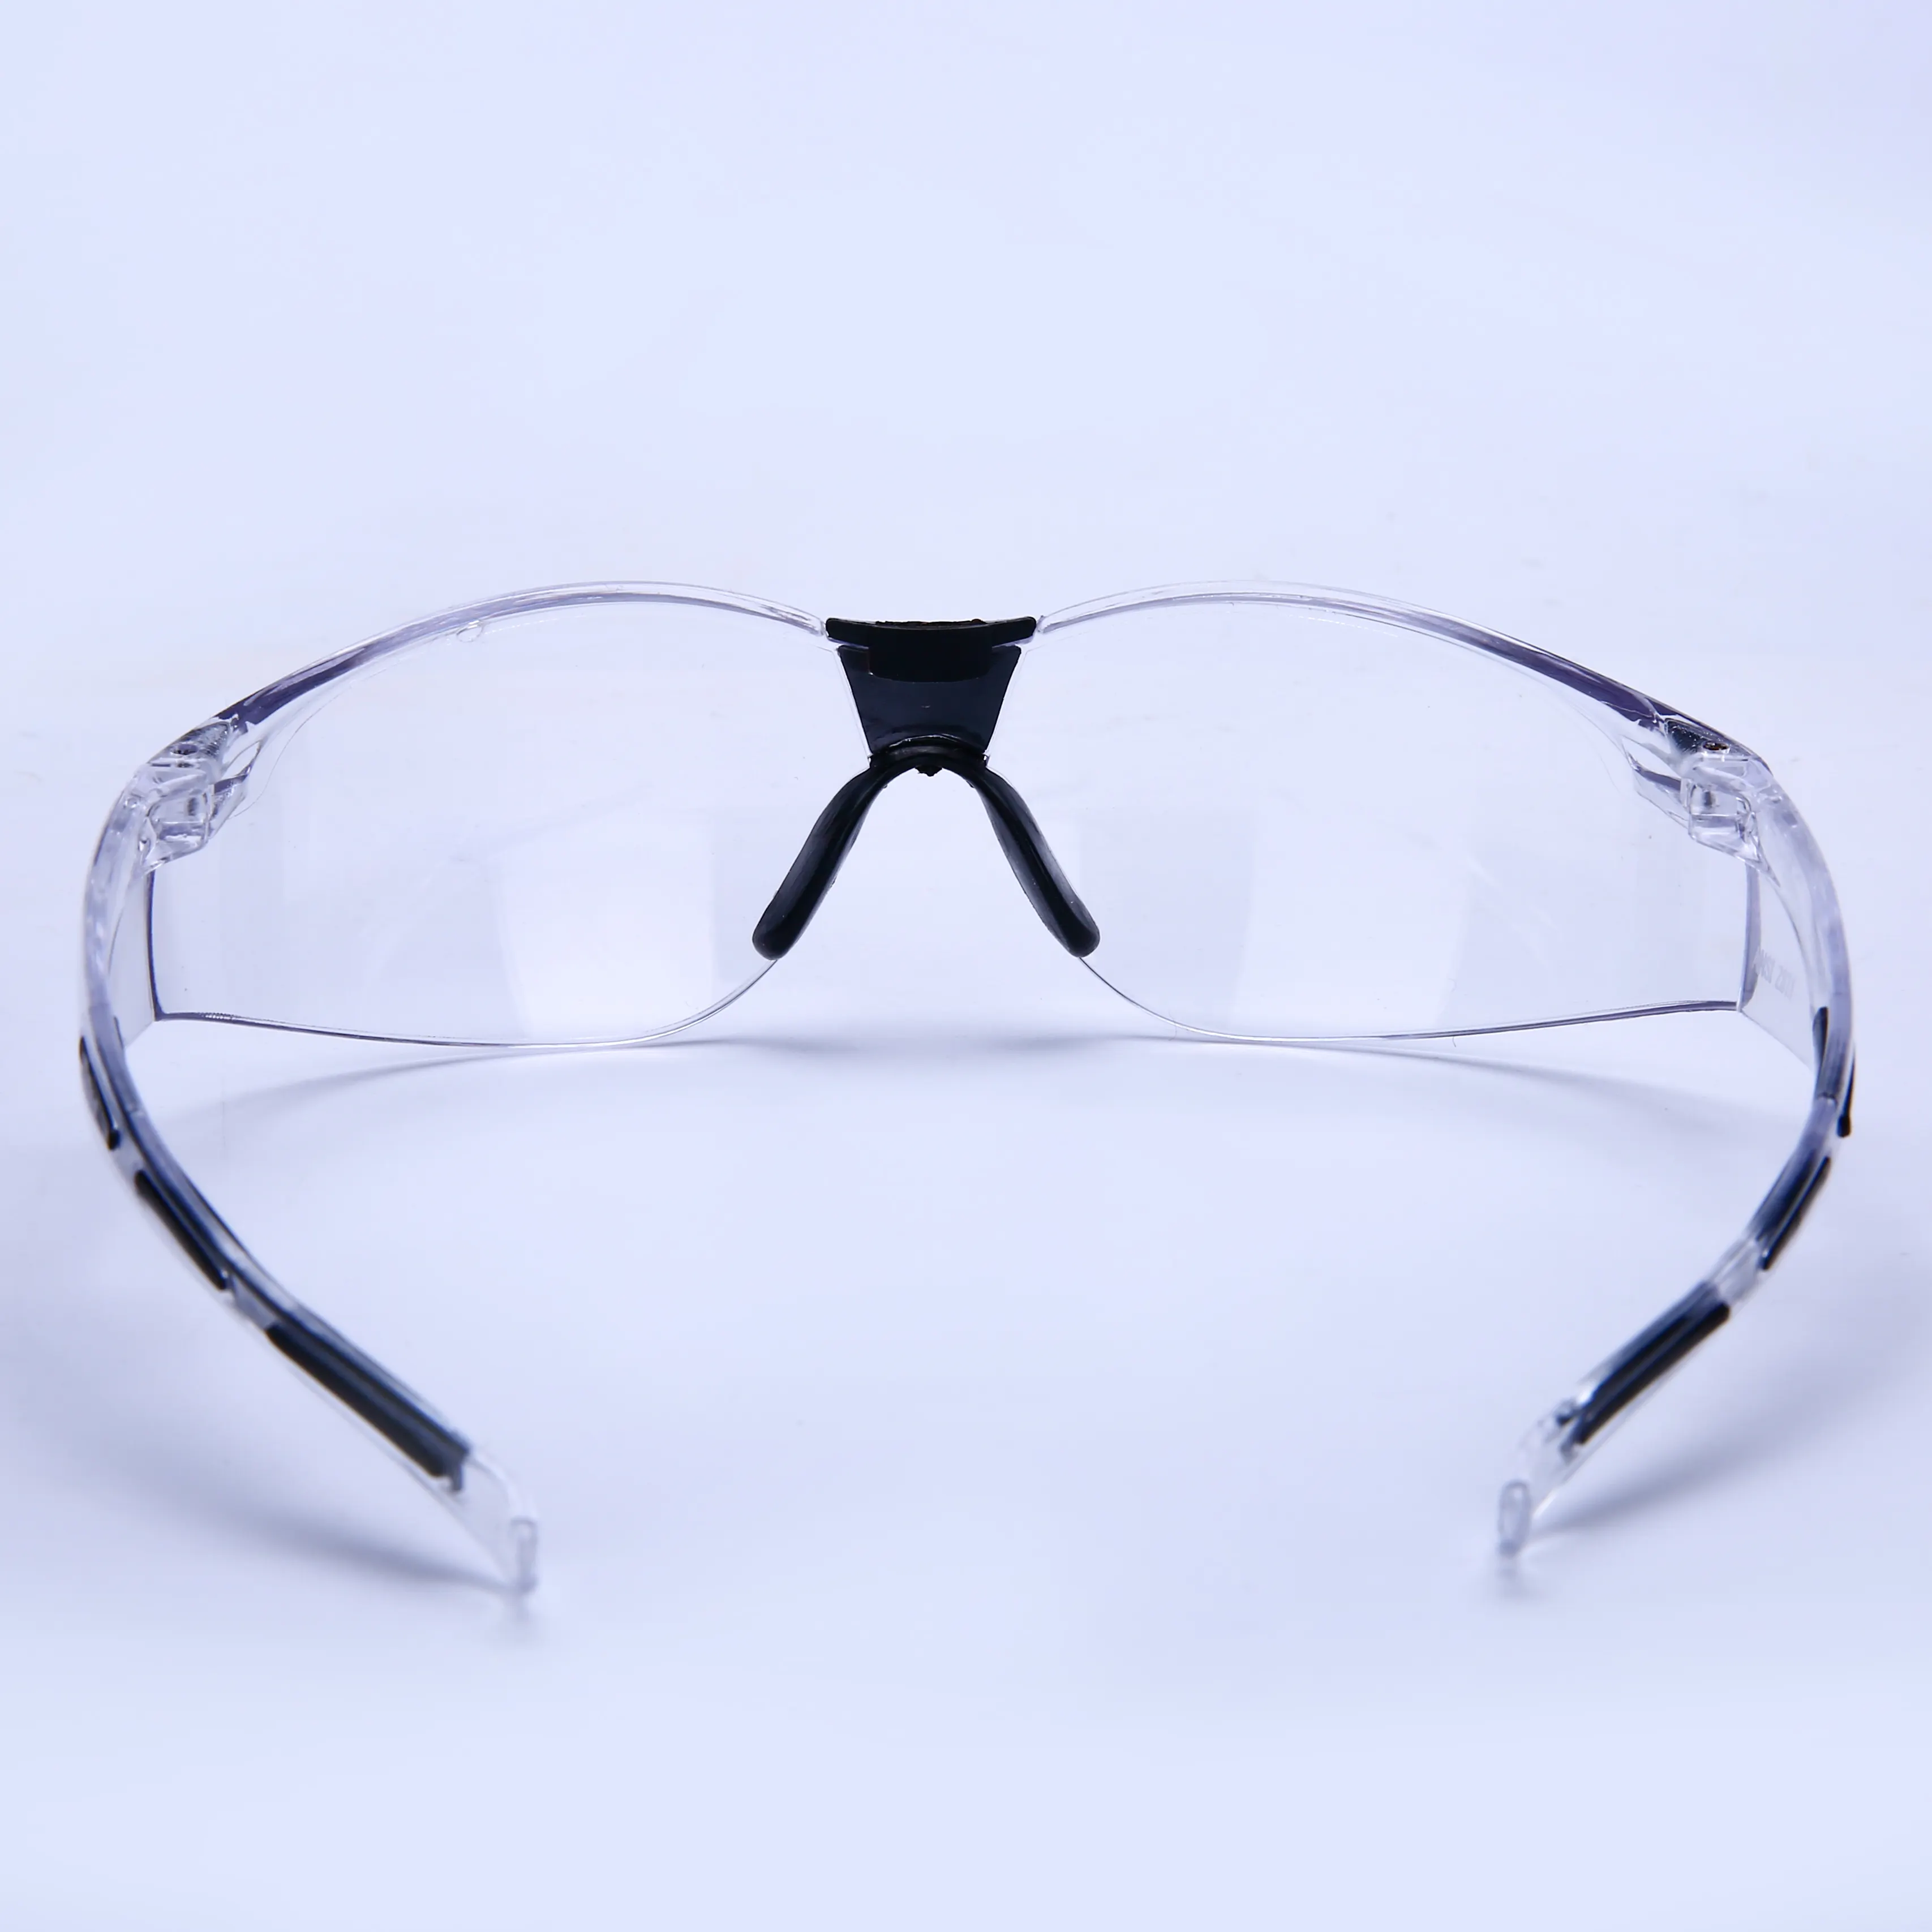 Güvenlik gözlükleri endüstriyel çalışma inşaat açık Uv koruma Ansi Z87.1 güvenlik koruyucu gözlük